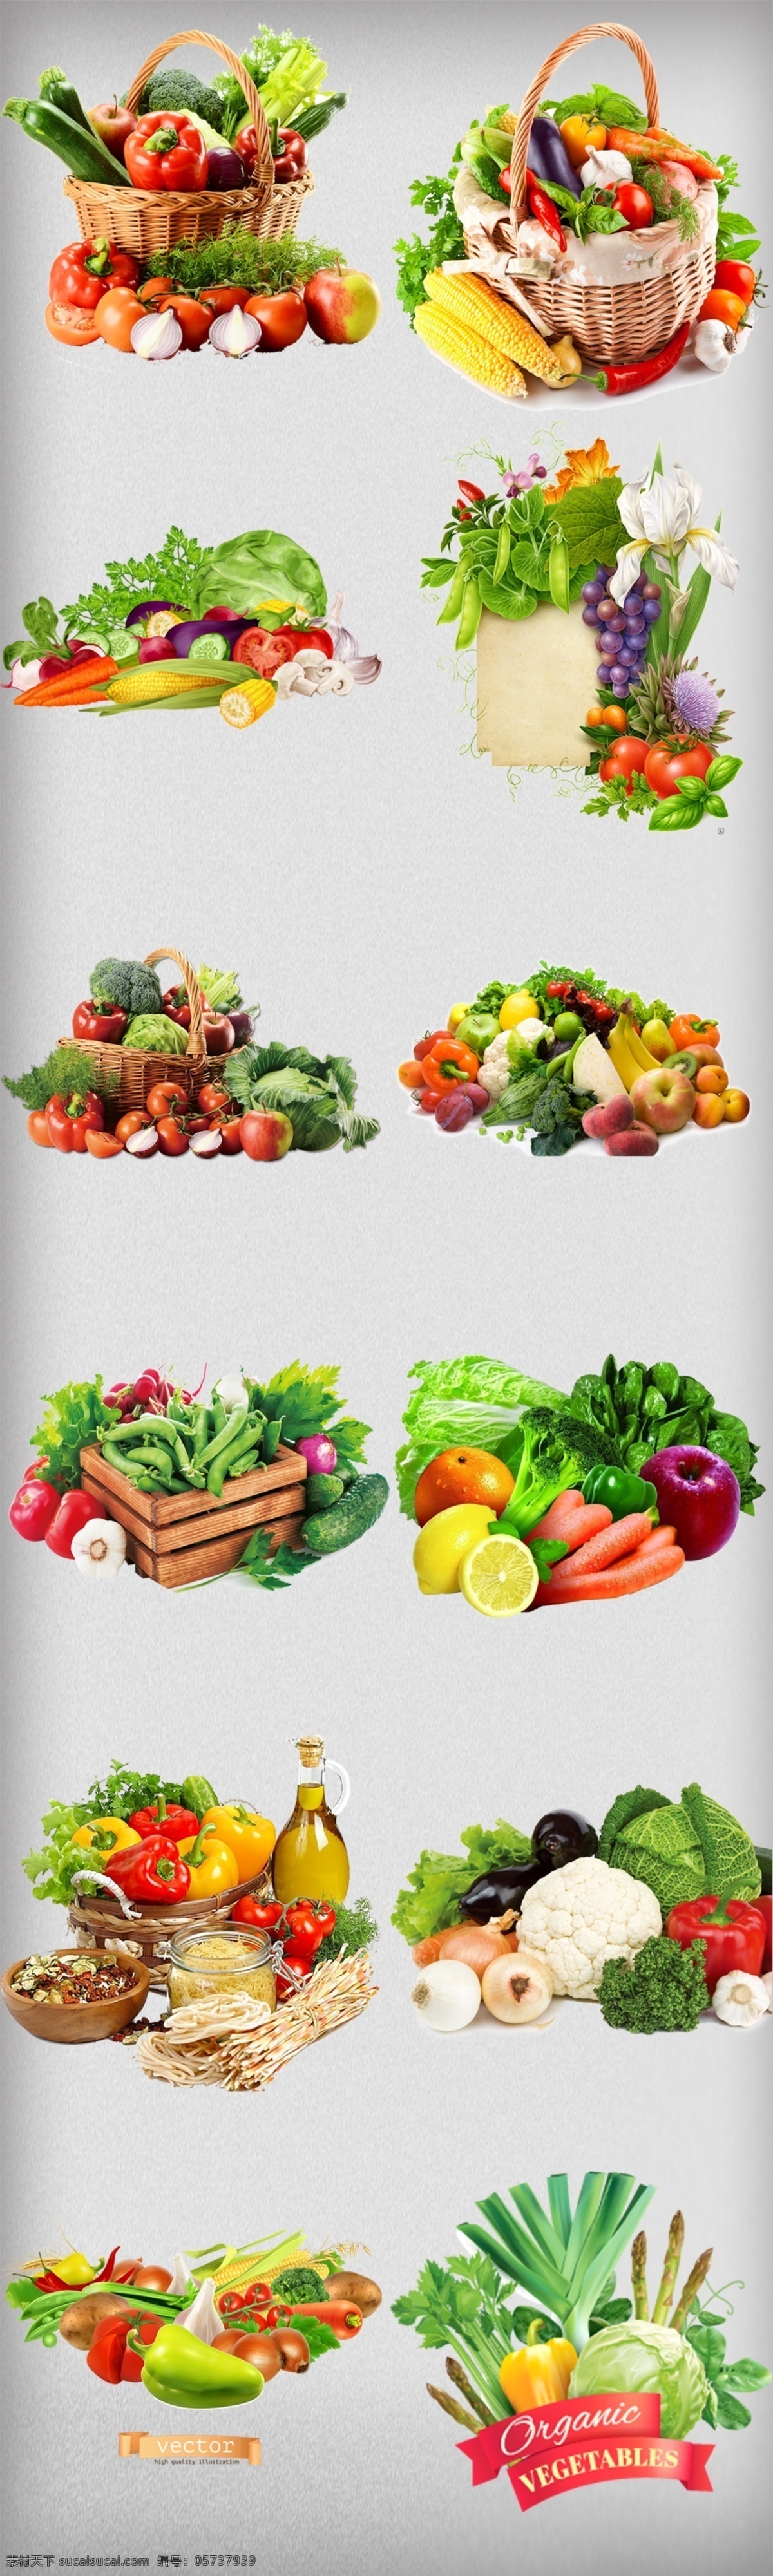 水果蔬菜组合 水果 蔬菜 组合 参考